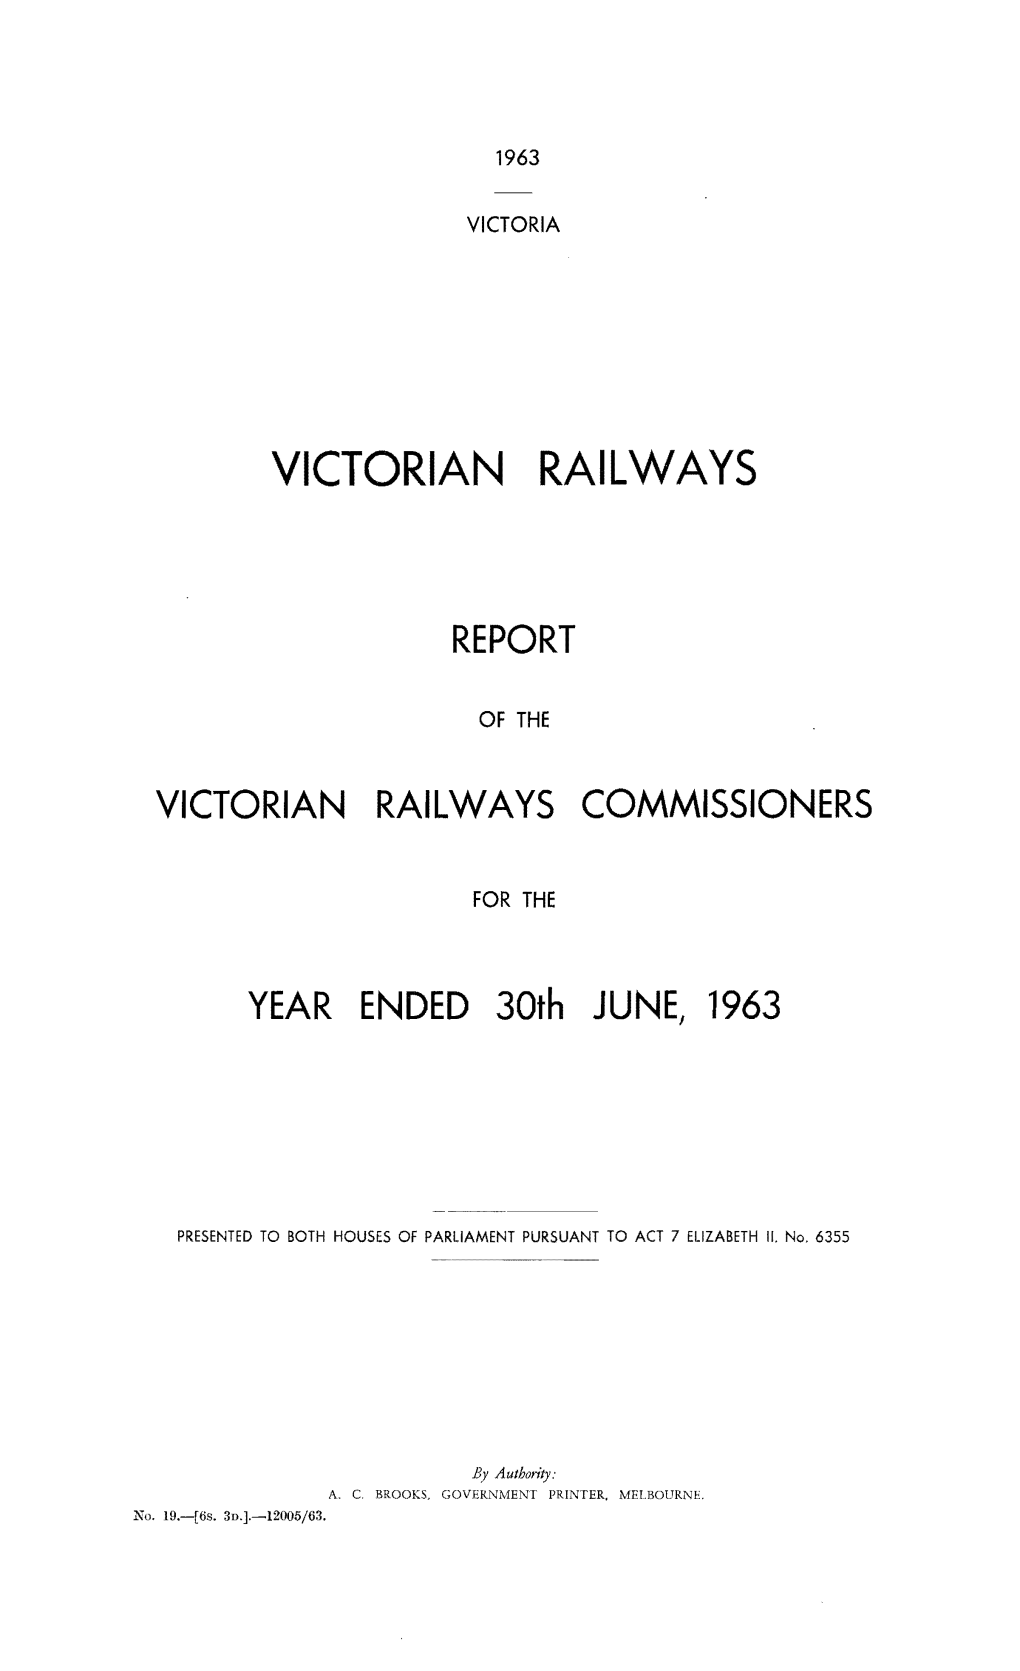 VR Annual Report 1963